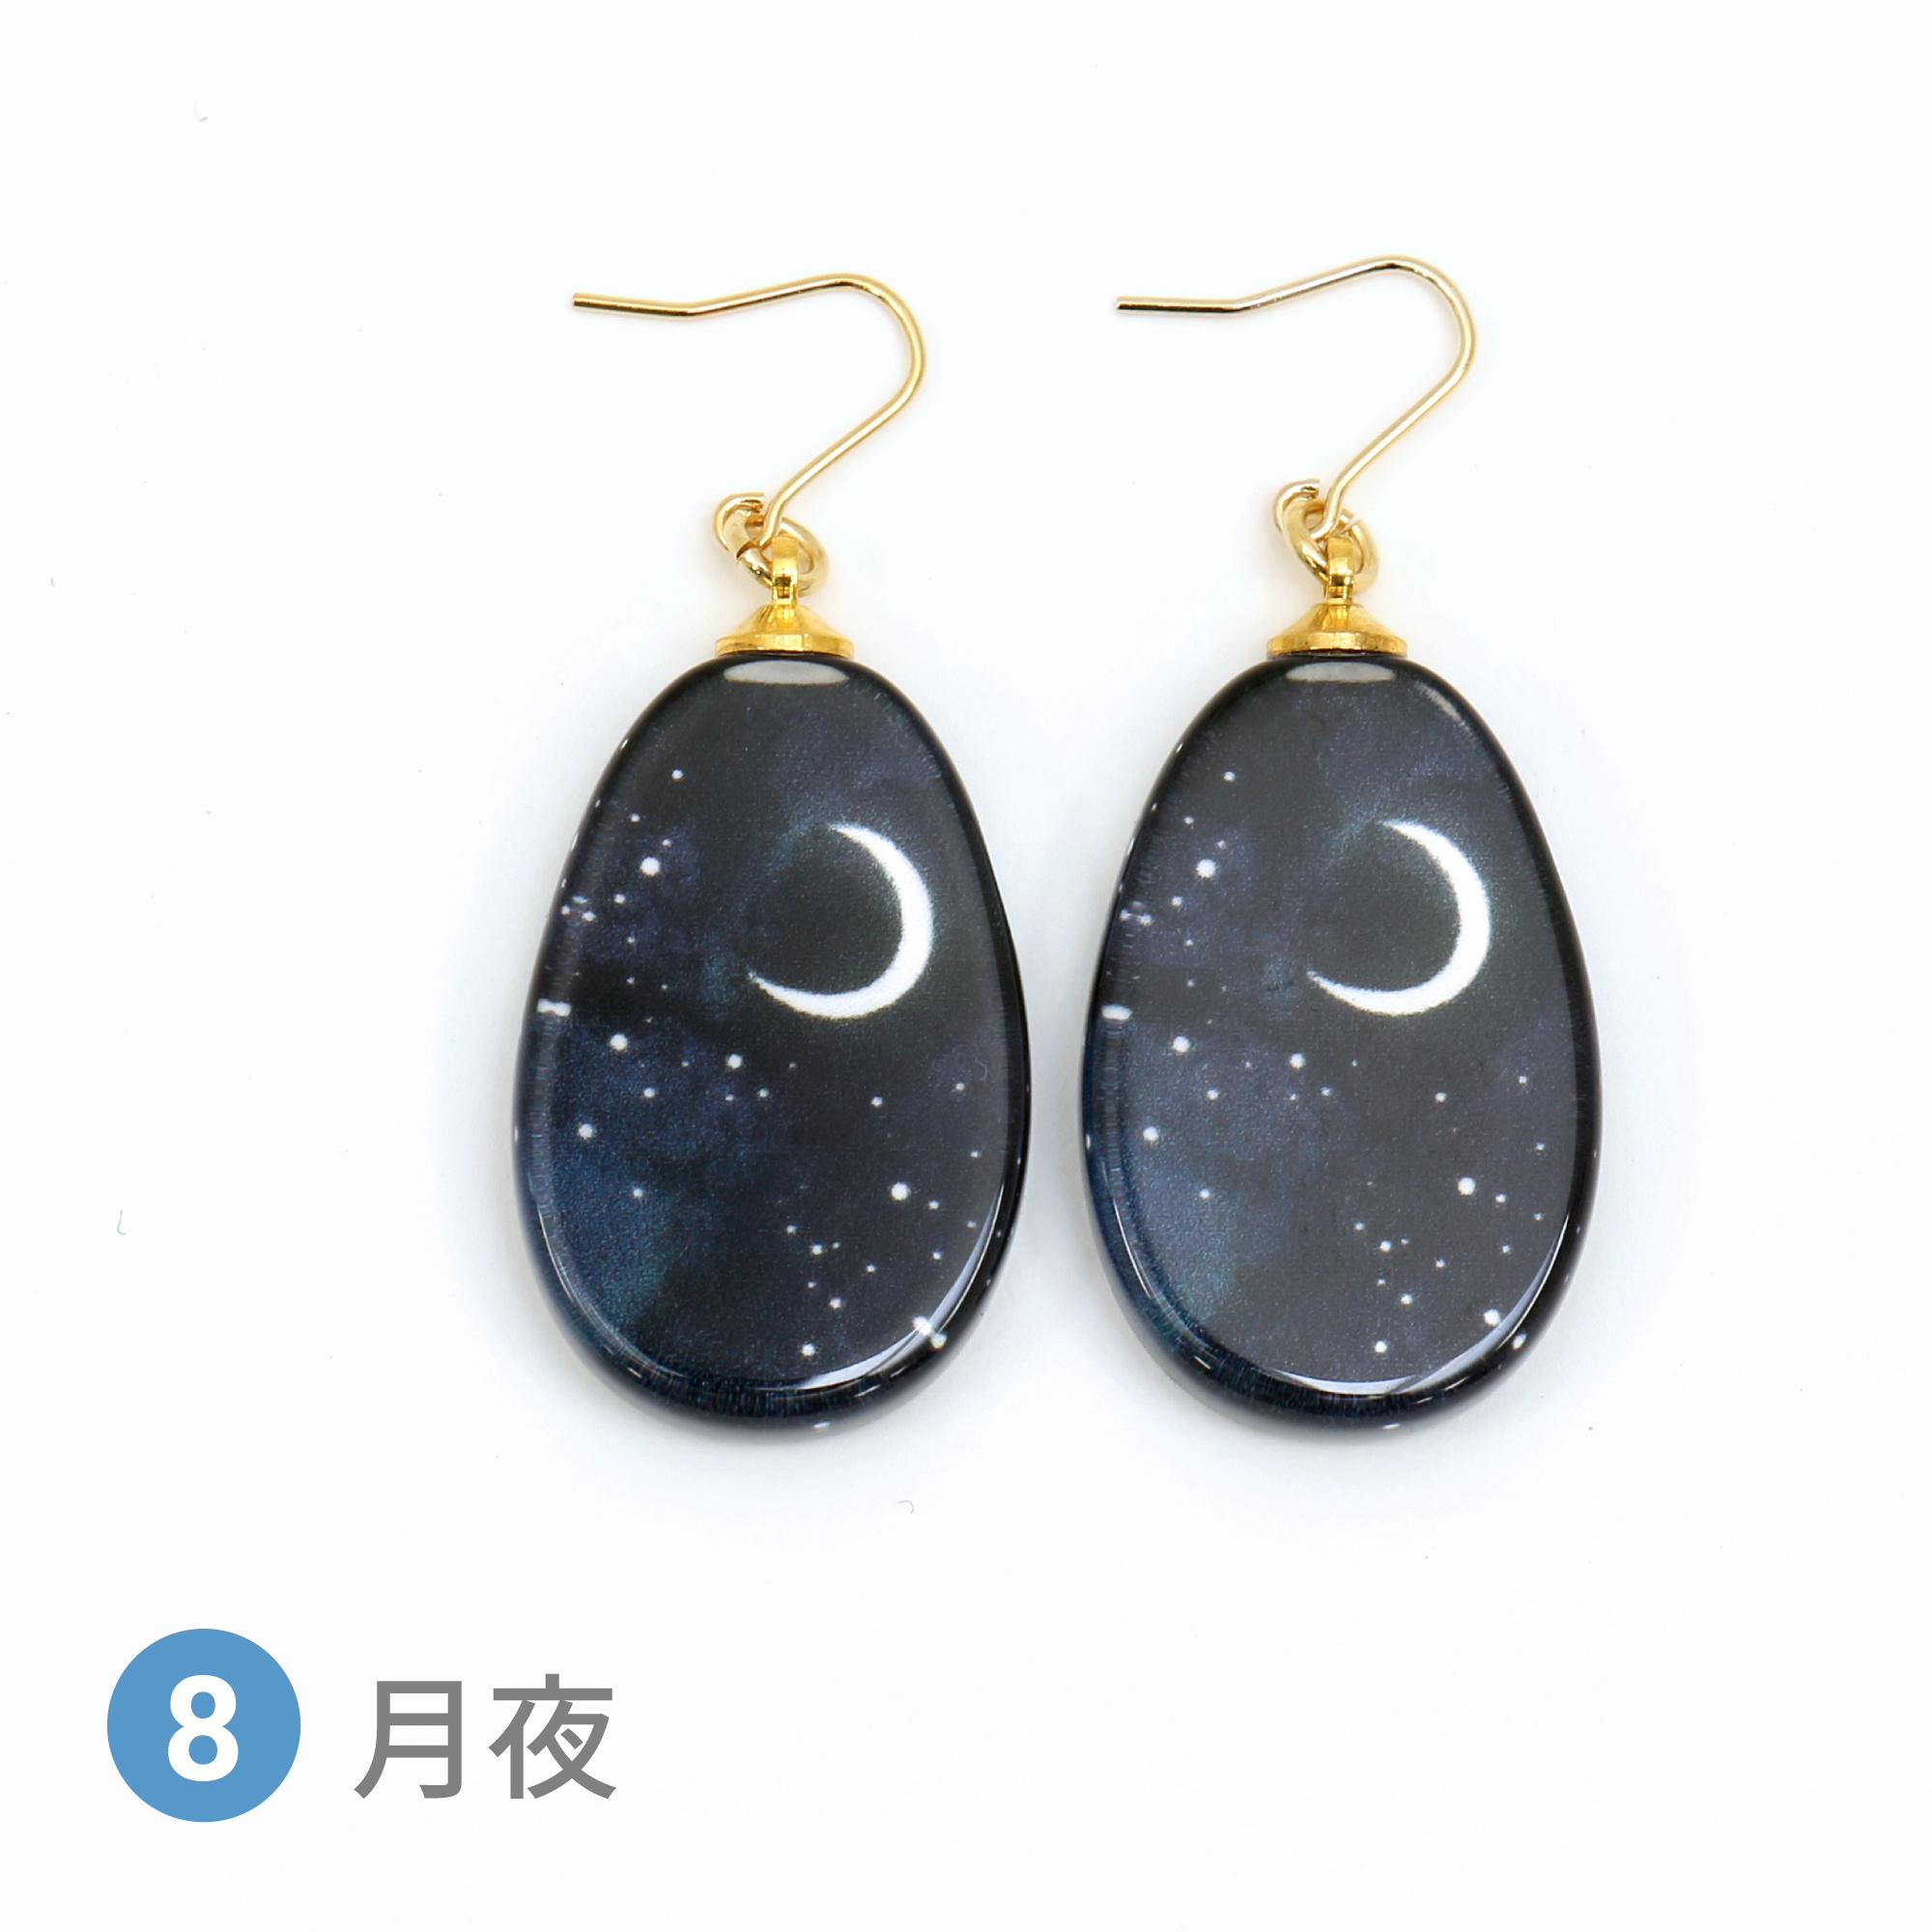 Glass accessories Pierced Earring STARRY SKY moonlit night drop shape